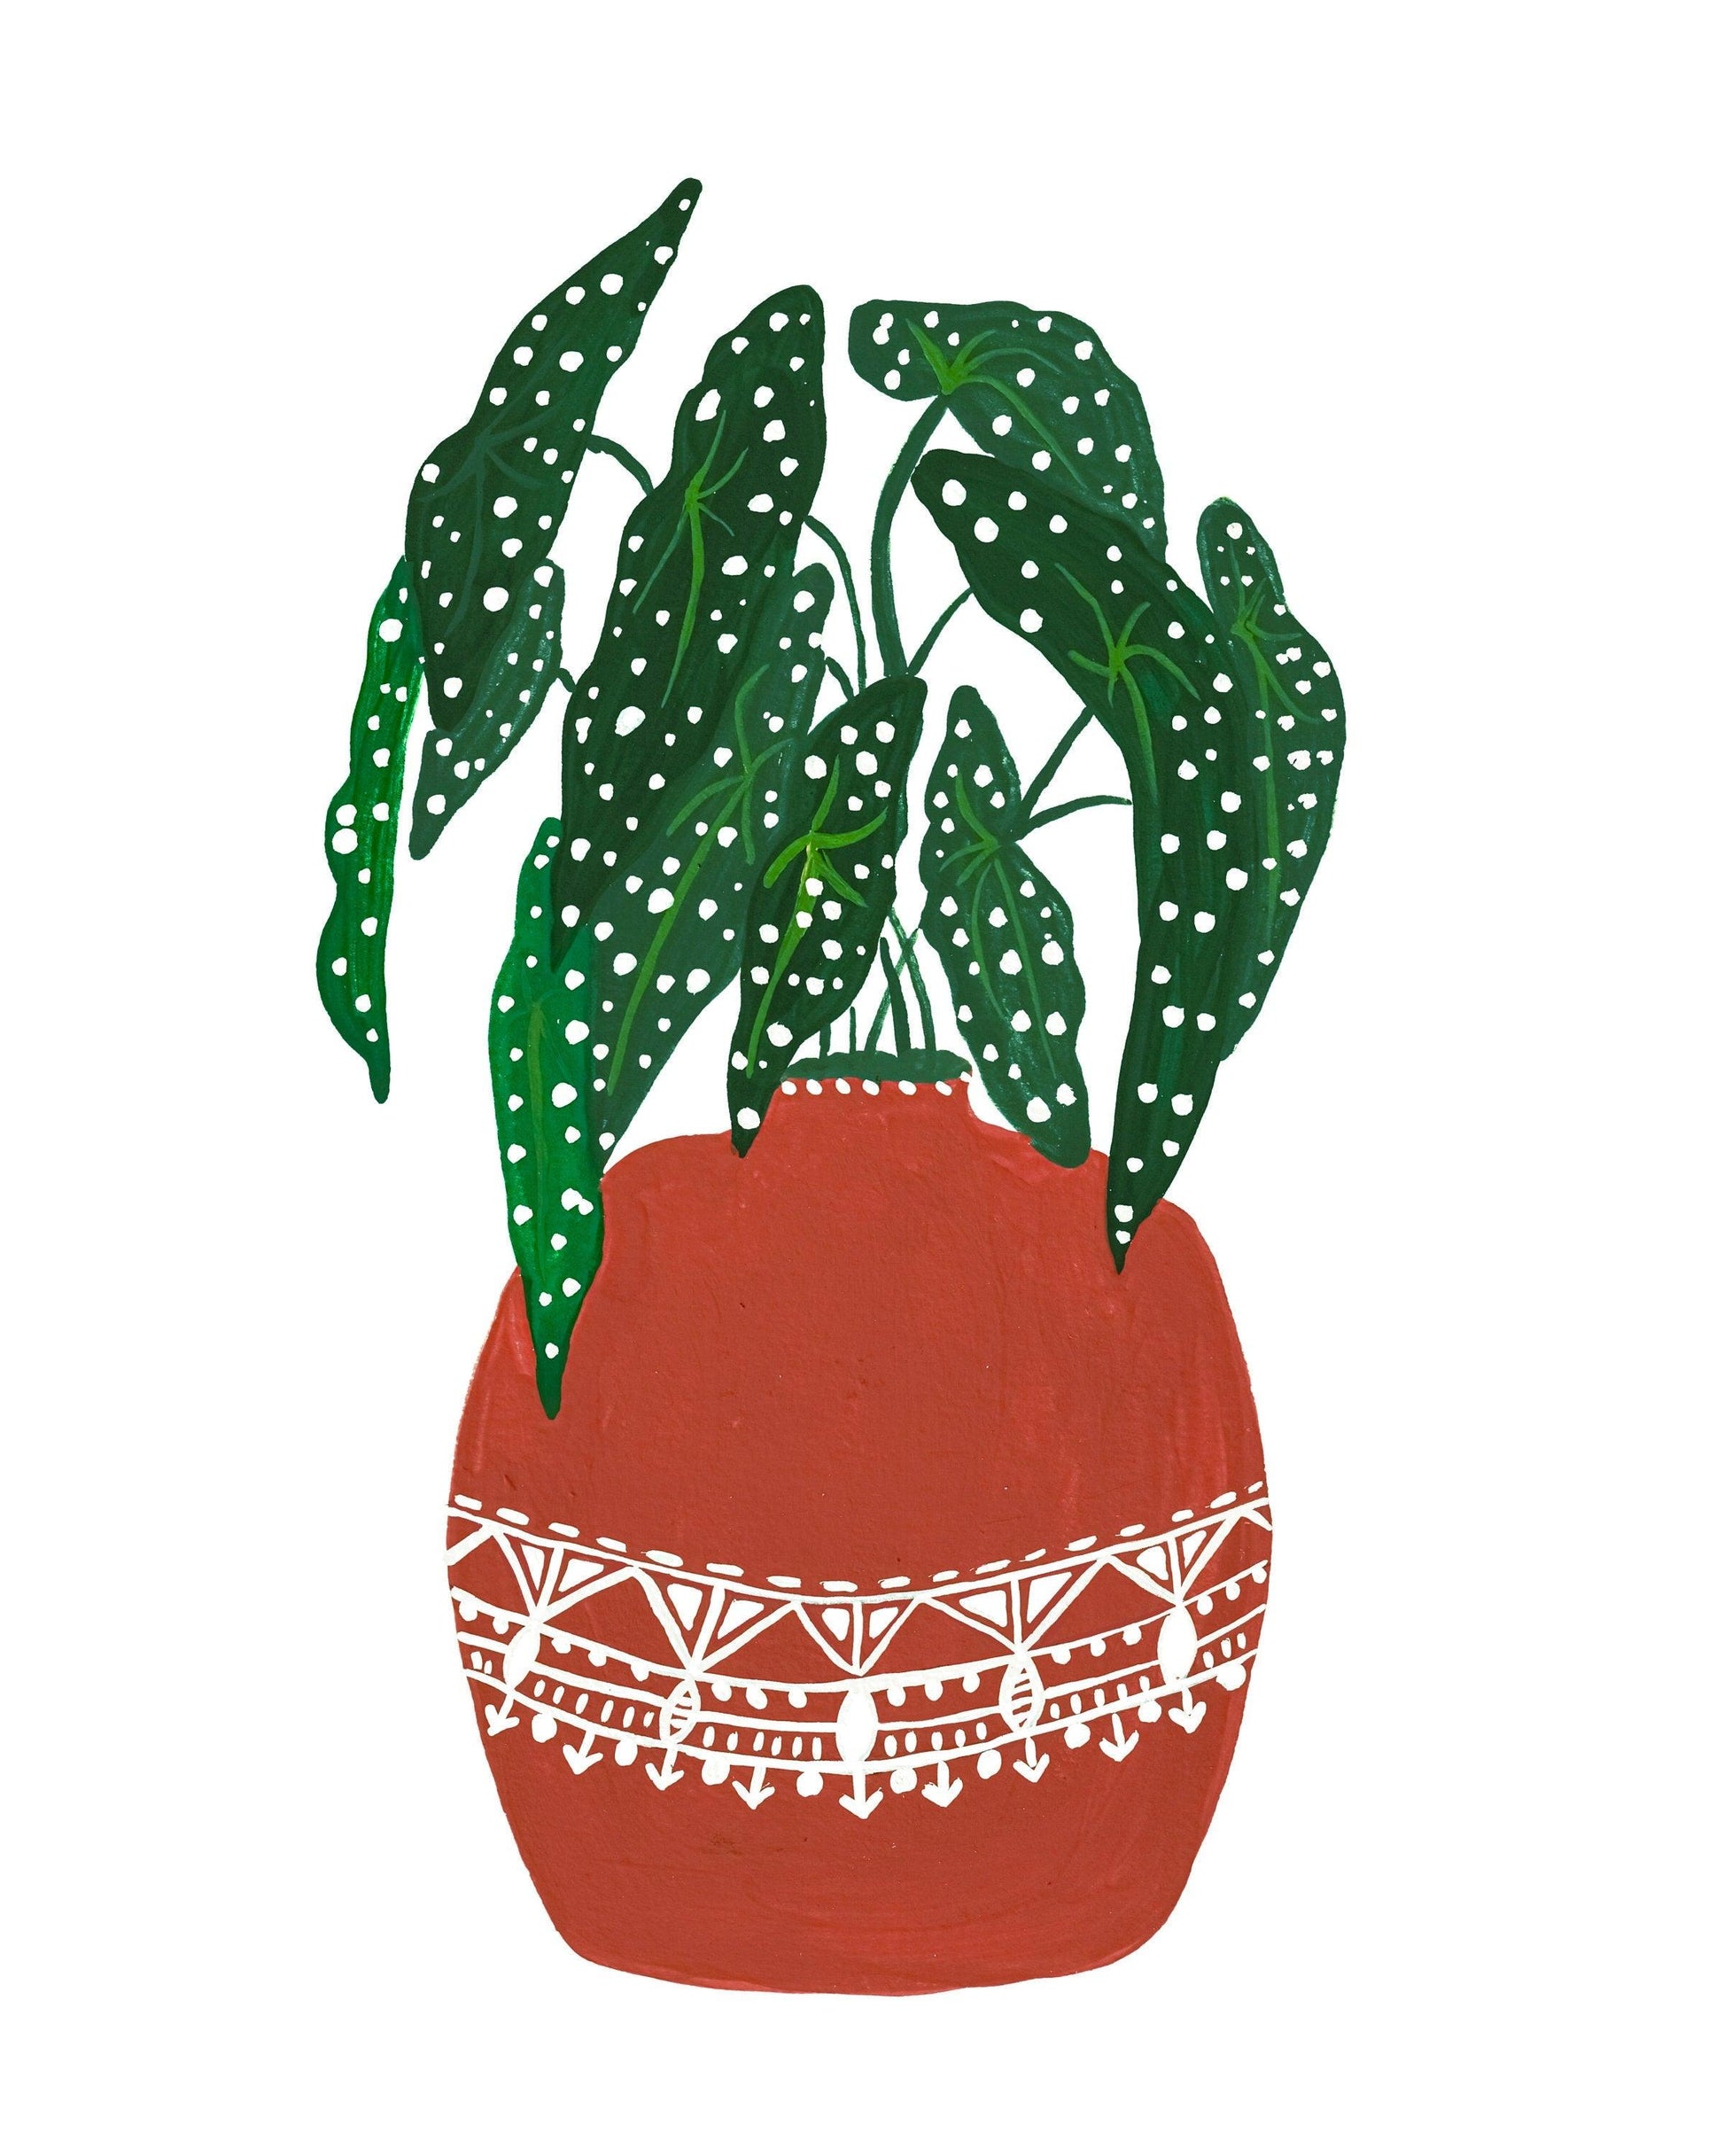 Begonia Maculata in Terracotta pot - Nabeela Rumi